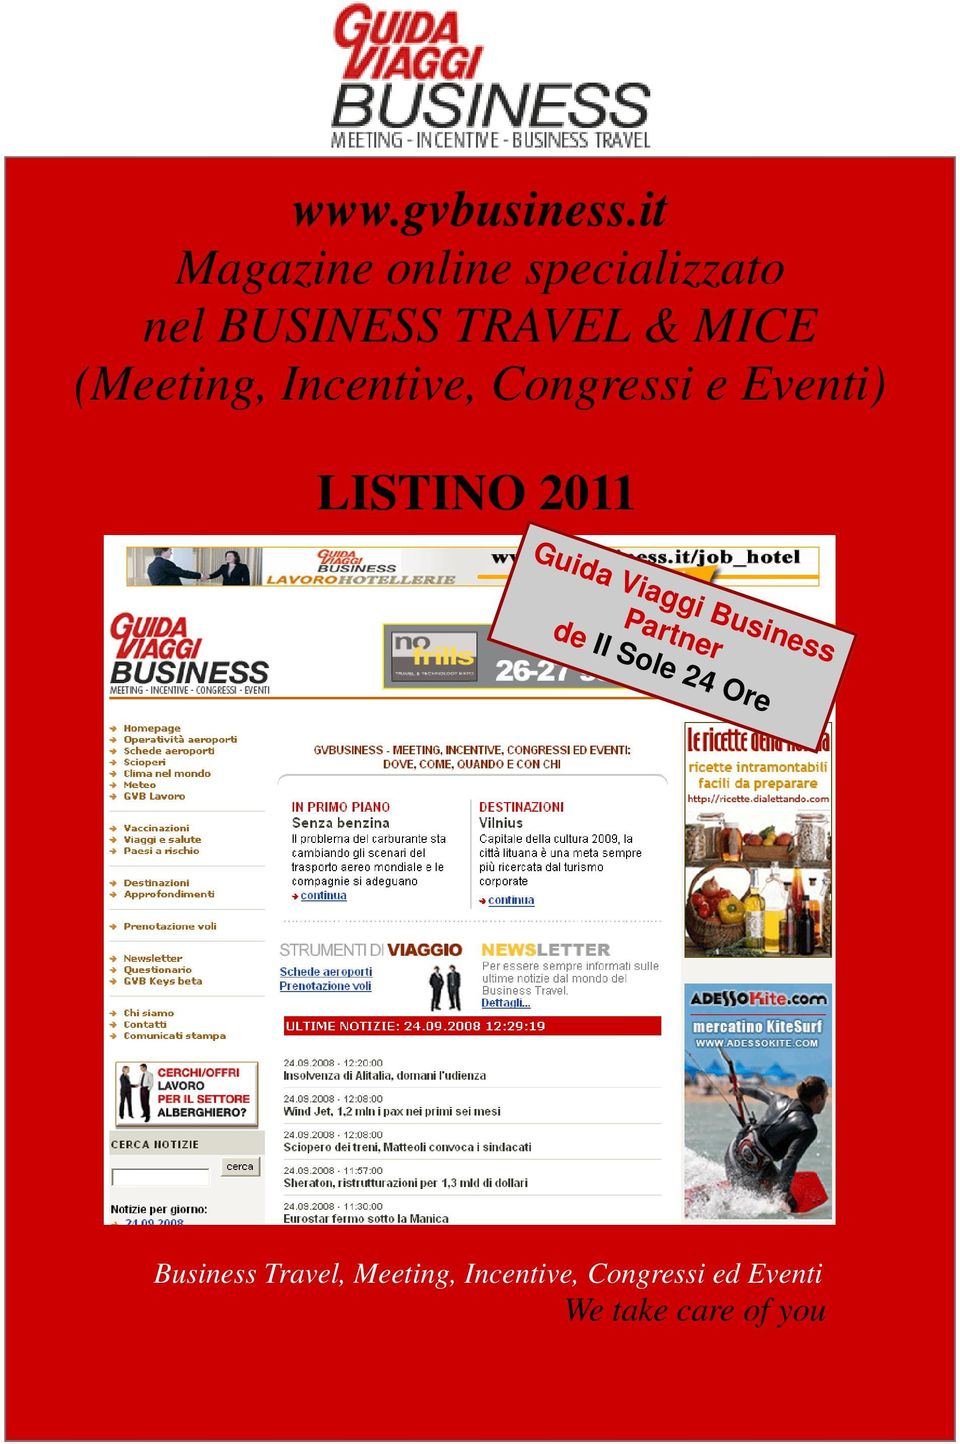 (Meeting, Incentive, Congressi e Eventi) LISTINO Guida Viaggi